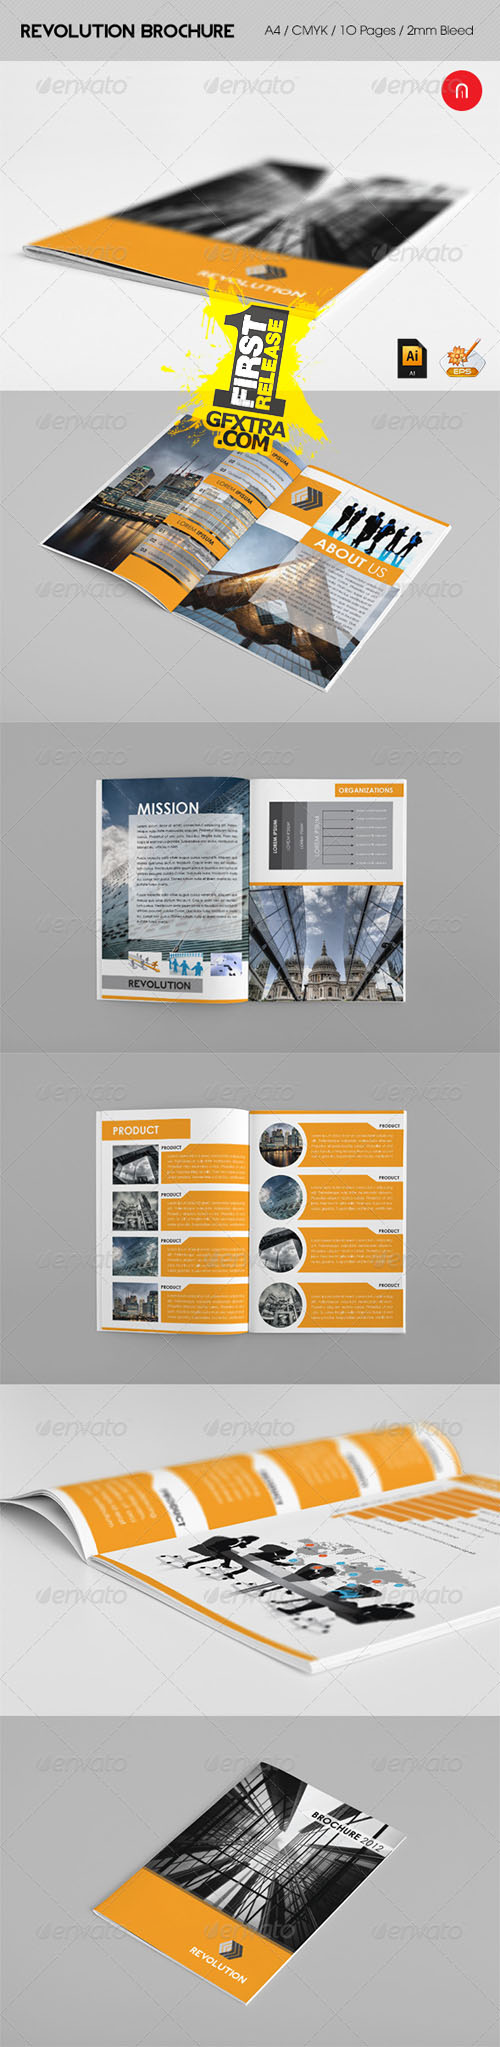 GraphicRiver: Revolution Brochure 2012